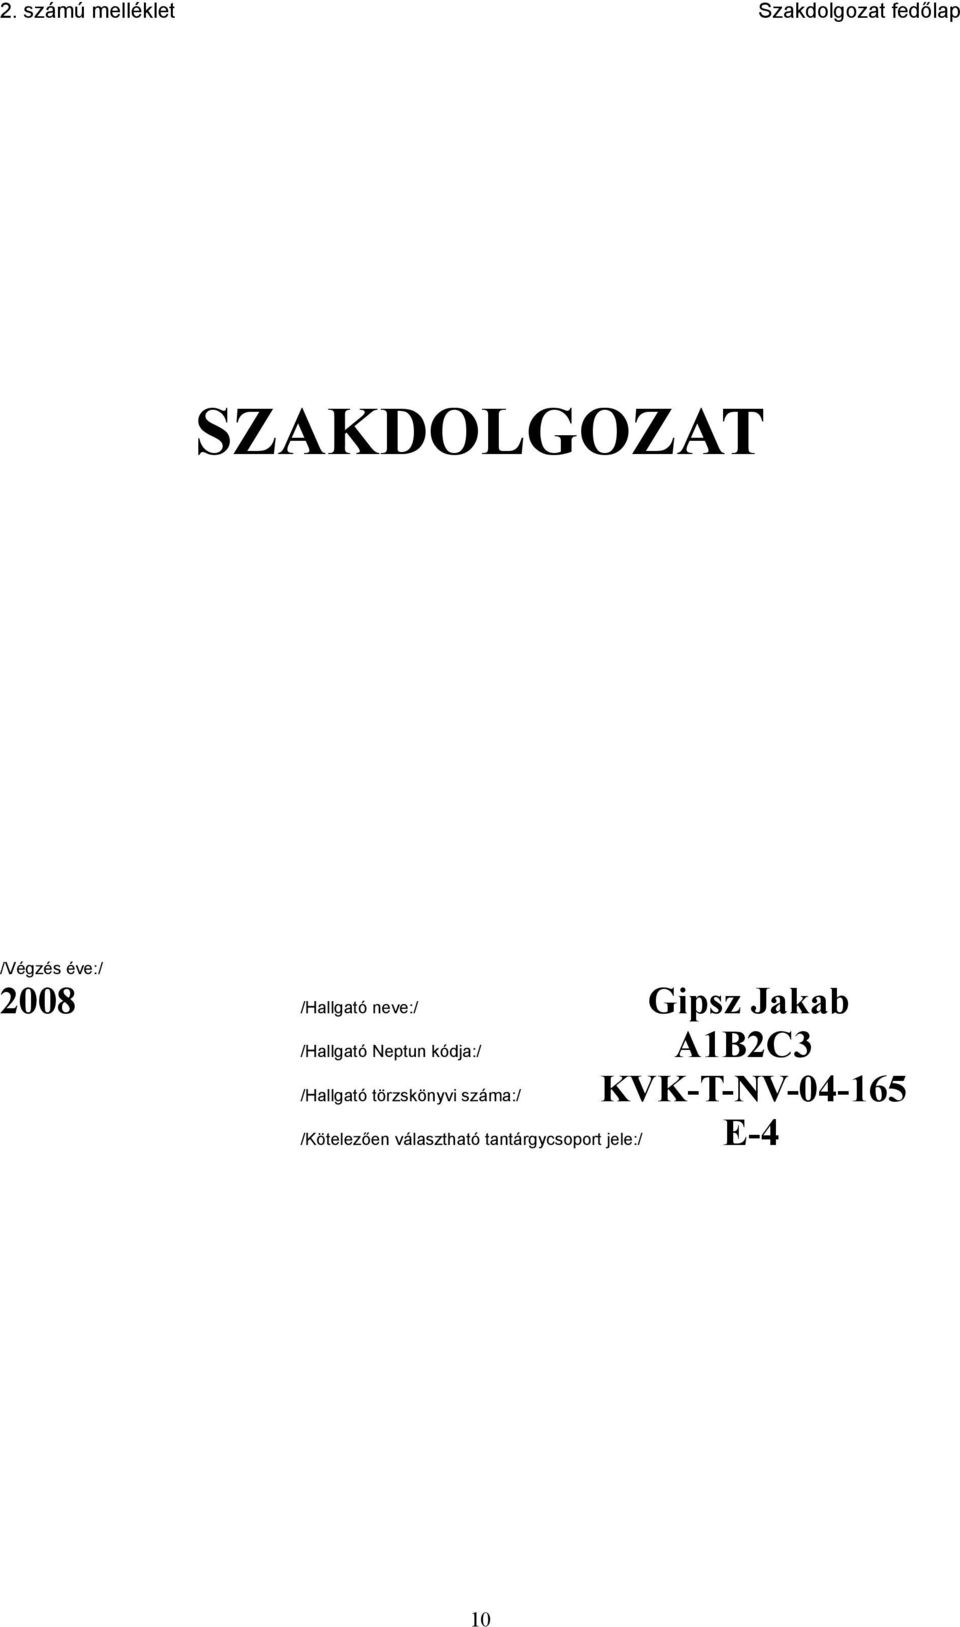 BUDAPESTI MŰSZAKI FŐISKOLA KANDÓ KÁLMÁN VILLAMOSMÉRNÖKI KAR - PDF Free  Download